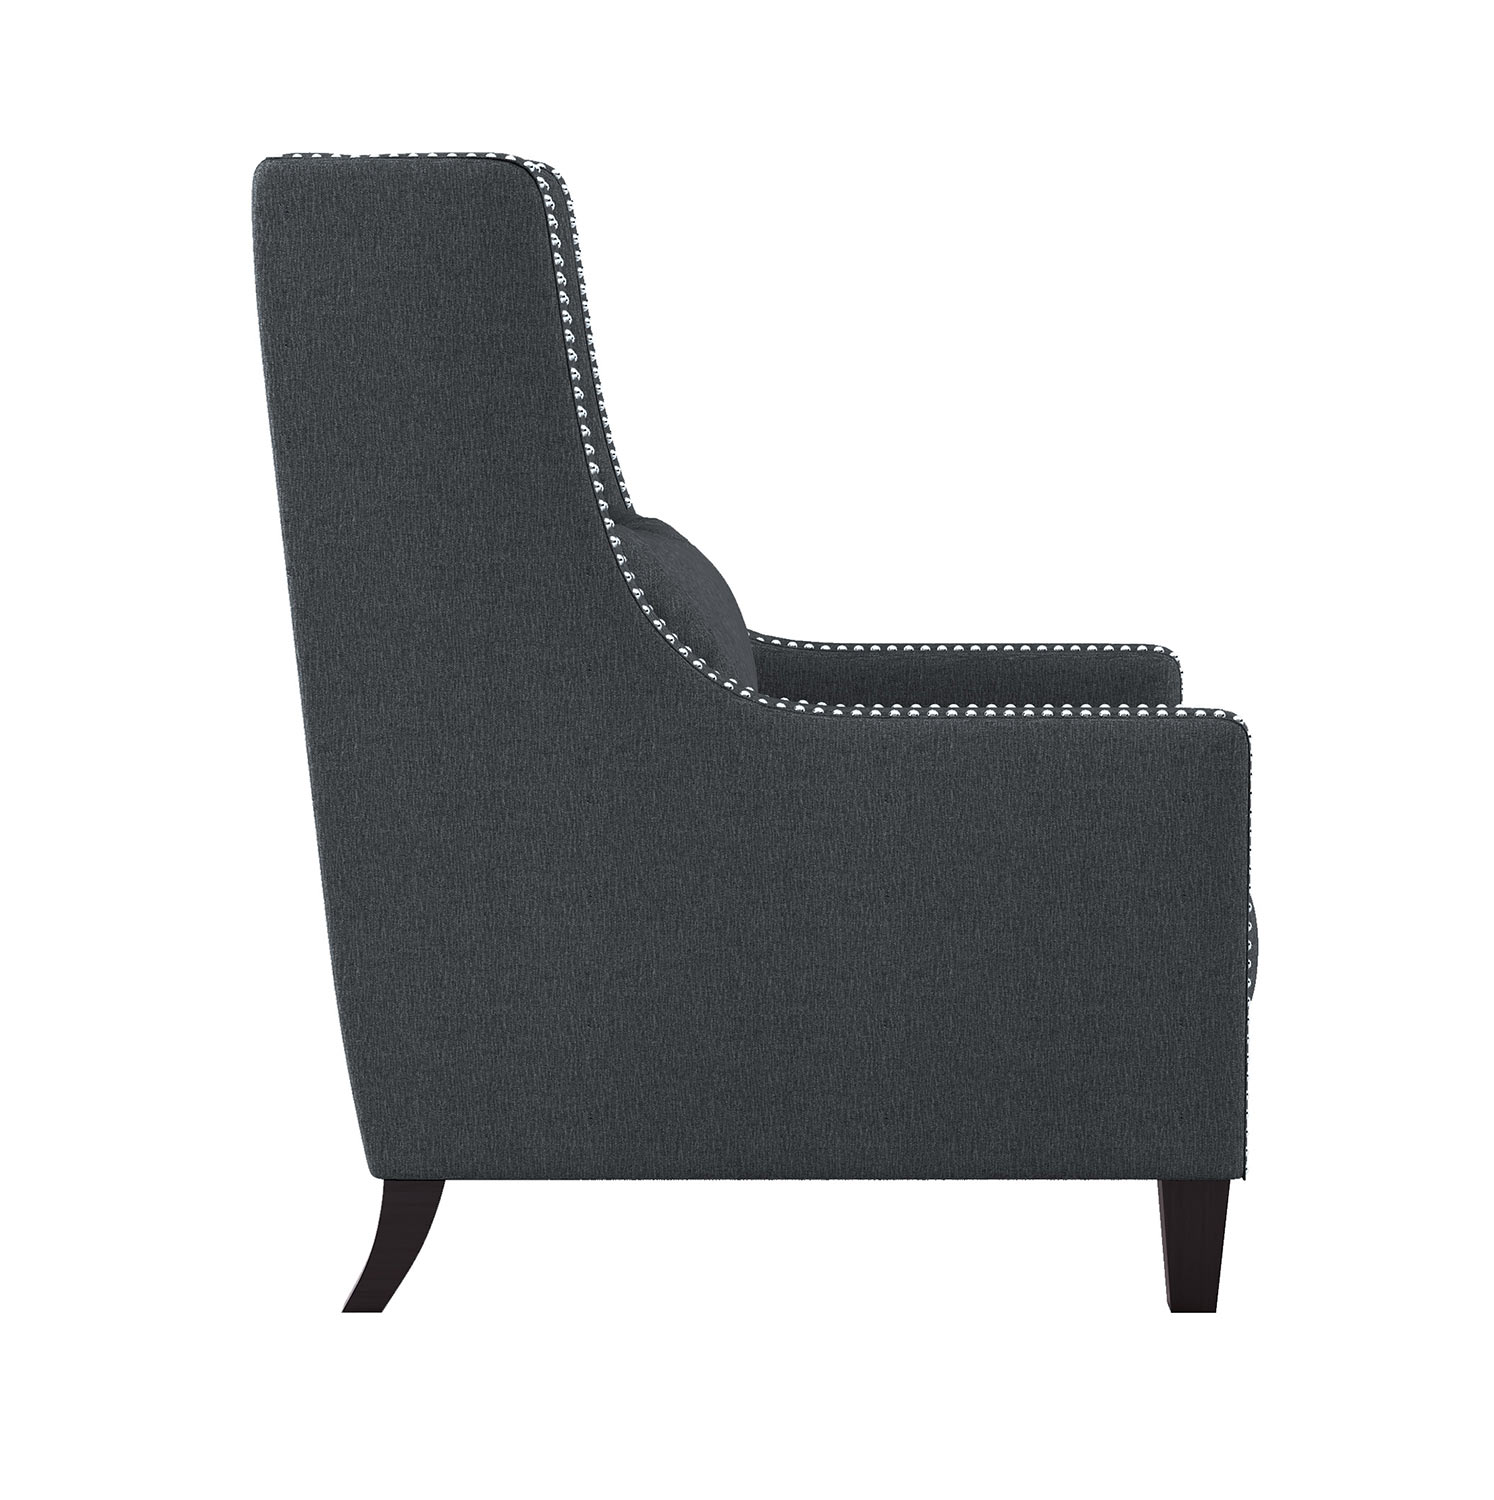 Homelegance Keller Accent Chair - Dark gray